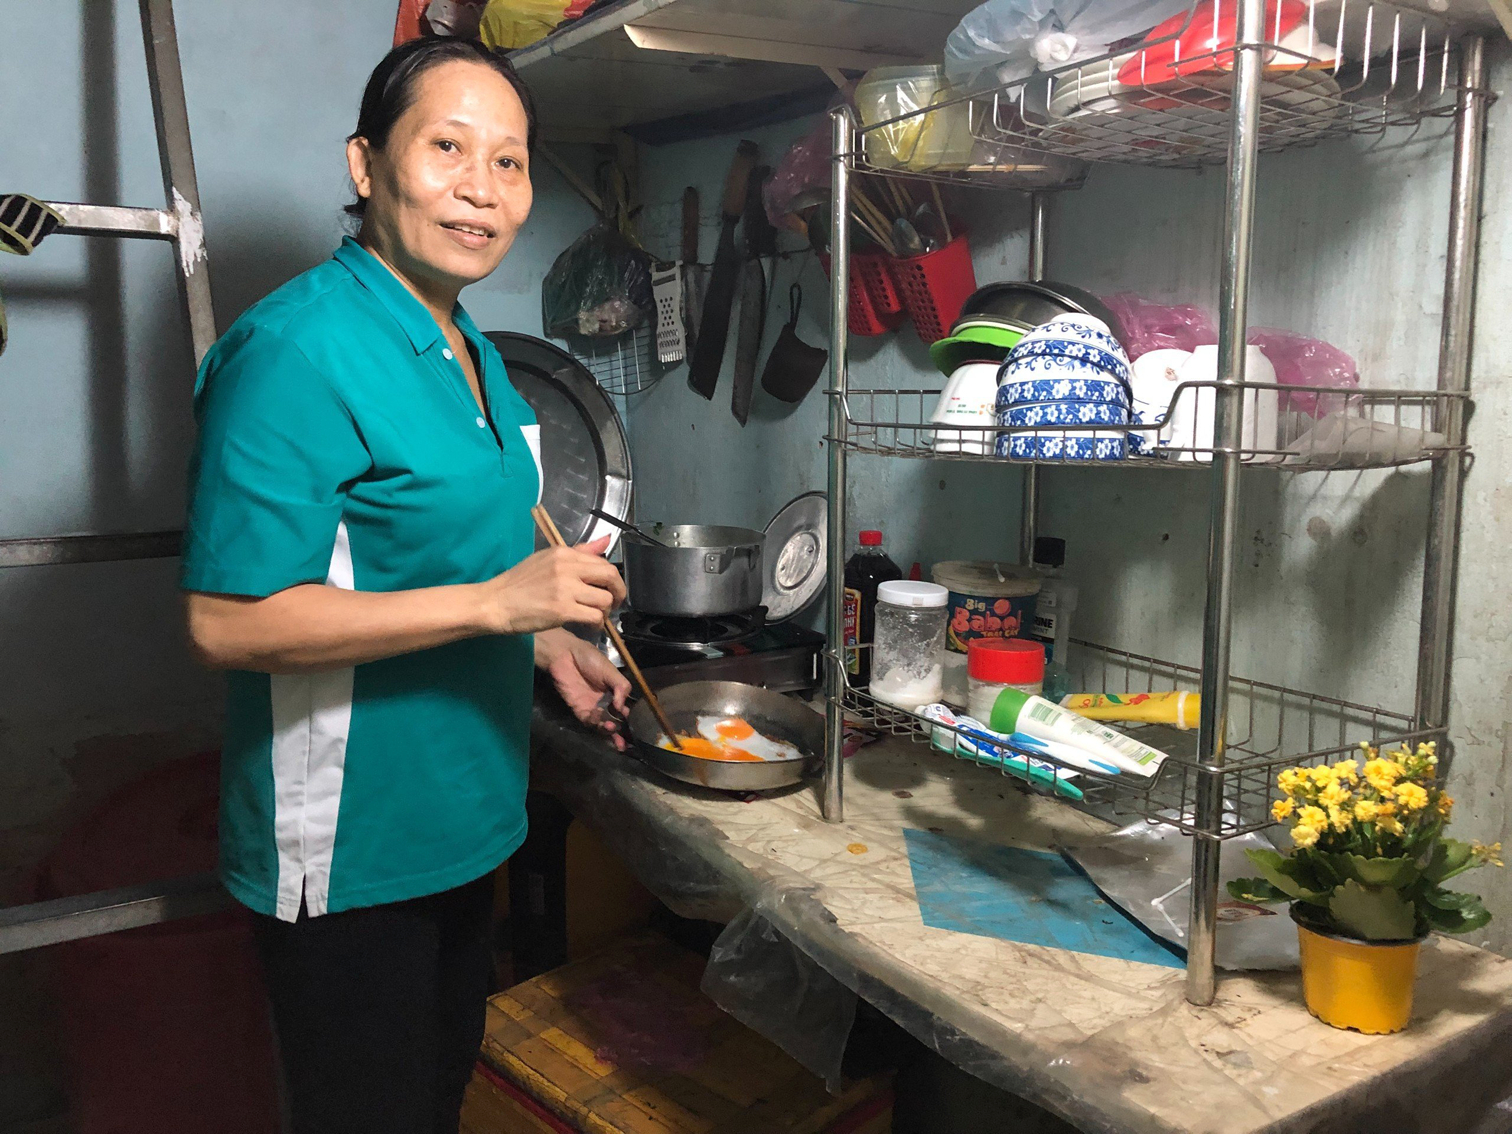 Đã ngoài 40 tuổi nên chị Trần Thị Hạnh cho rằng thuê nhà phù hợp hơn vay khoản tiền lớn để mua nhà - ẢNH: HOA LÀI